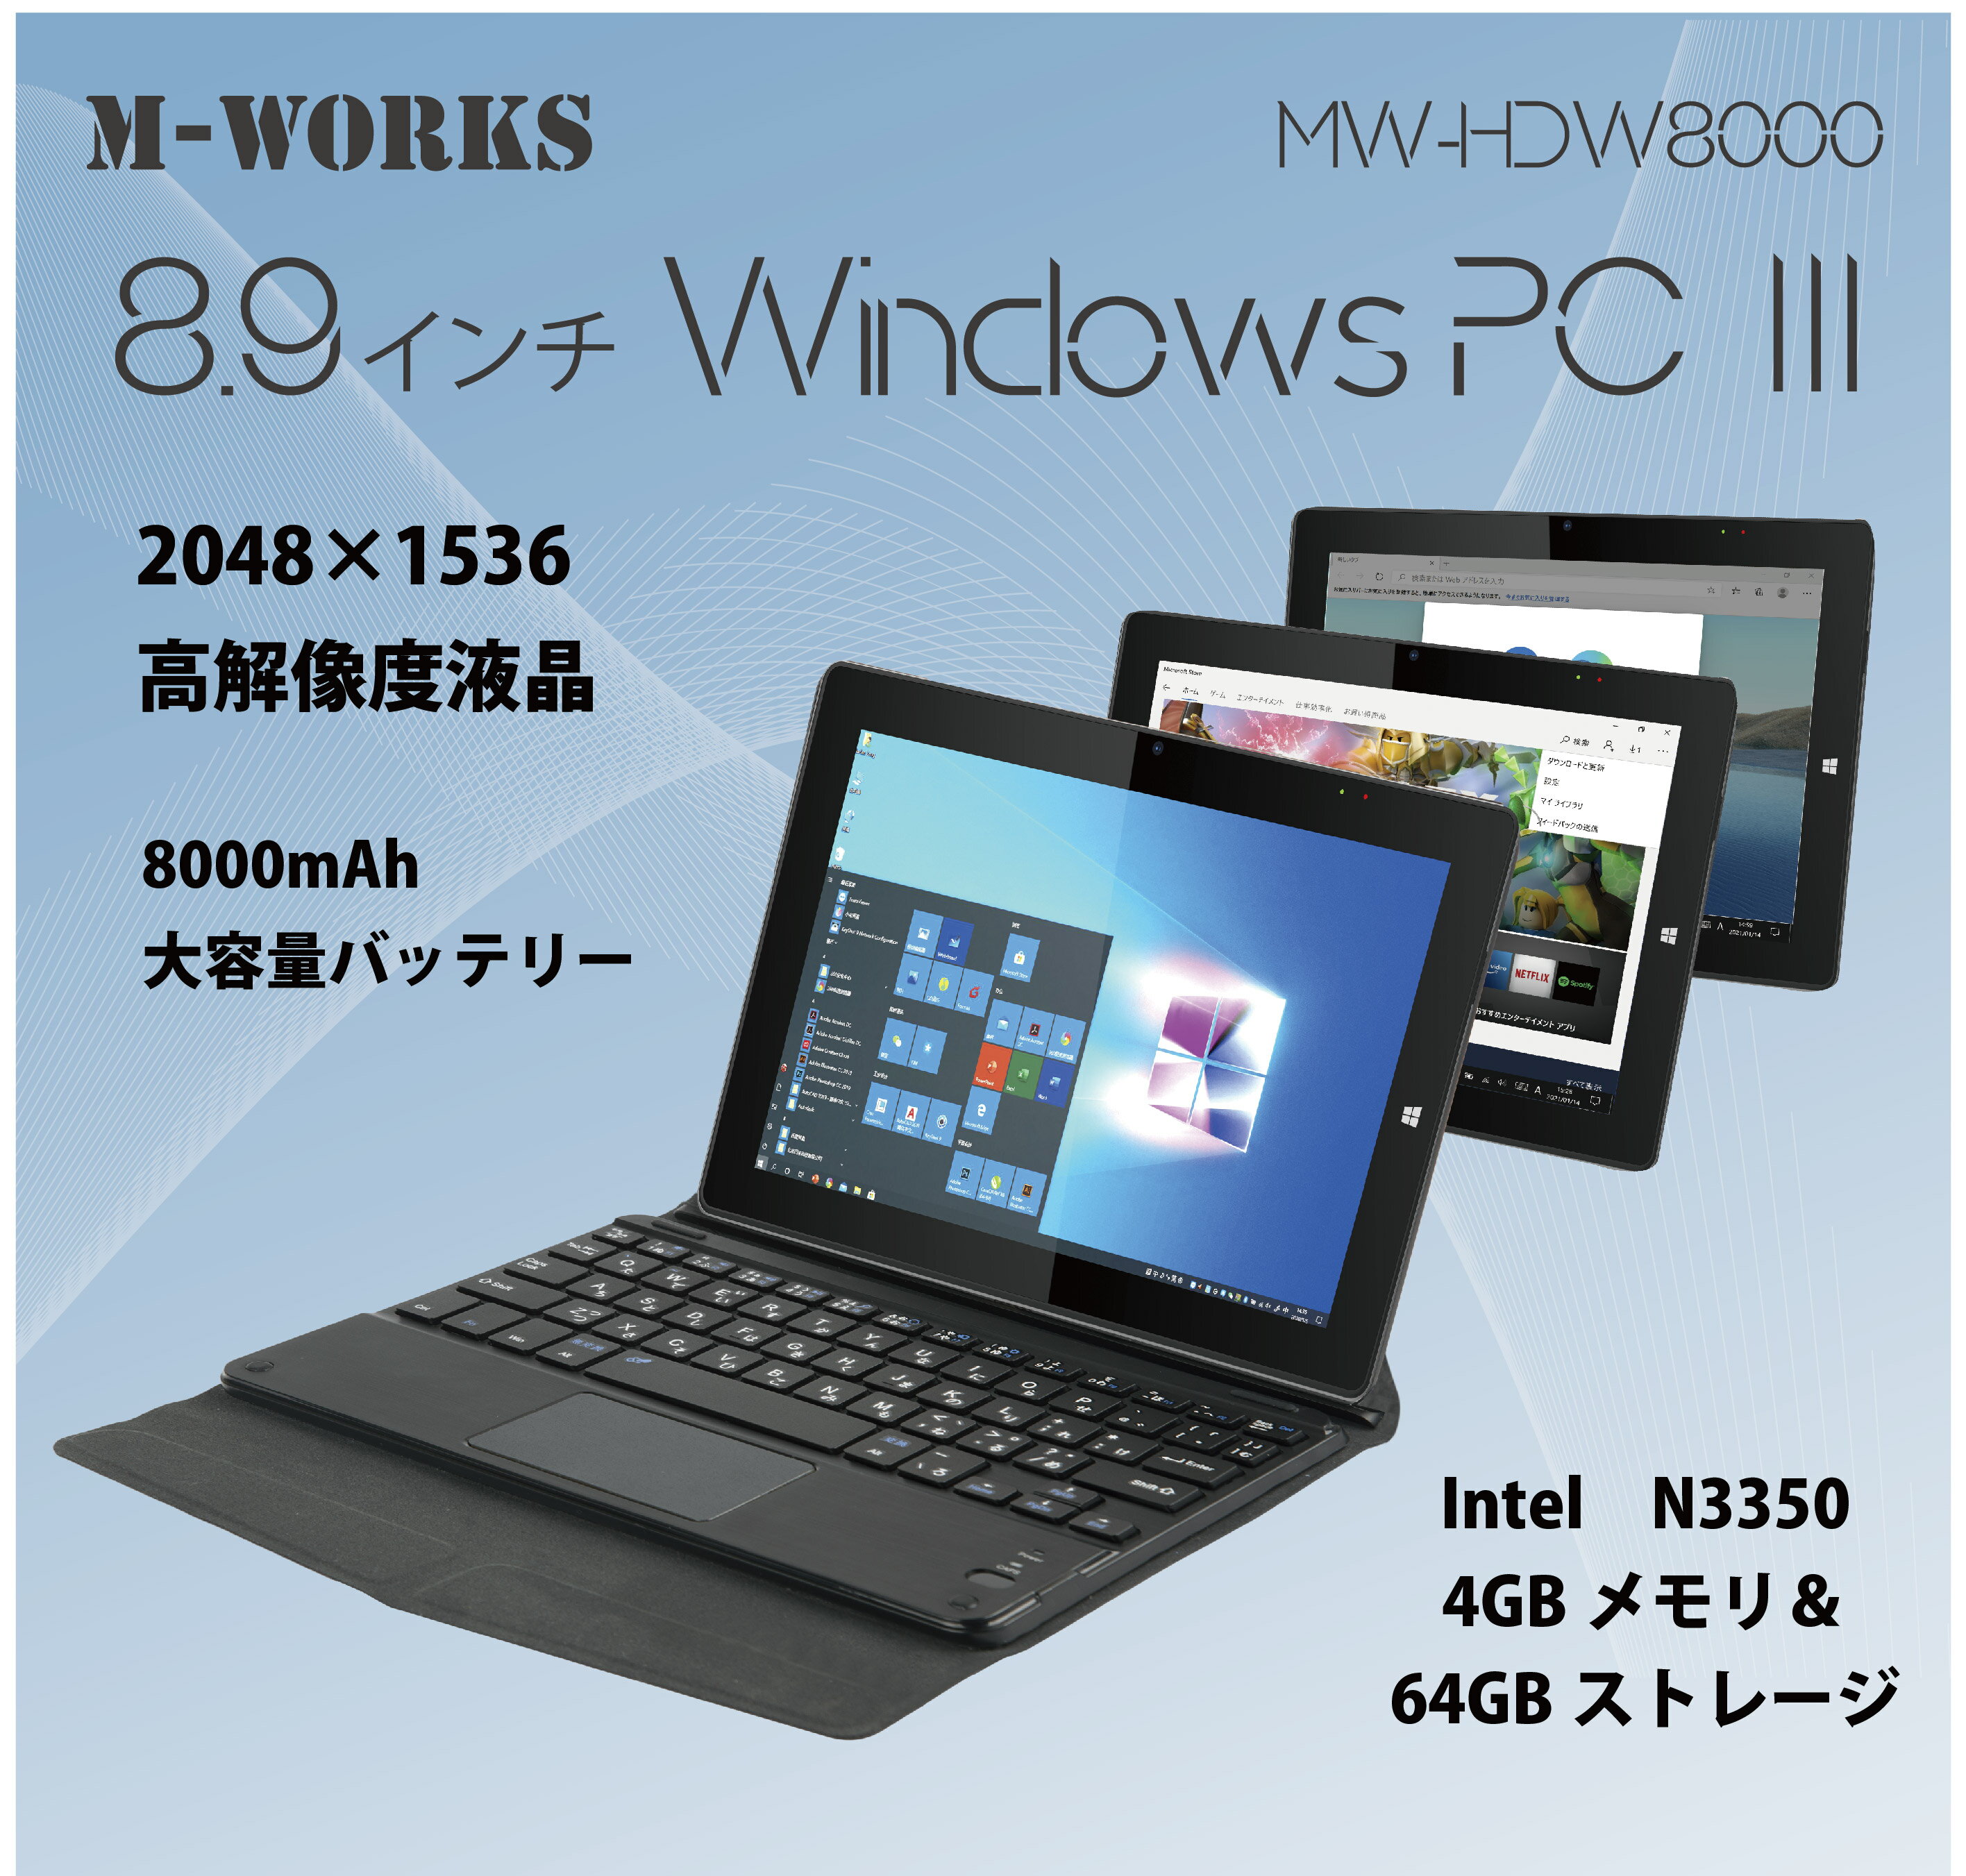 スマートフォン・タブレット, タブレットPC本体 M-WORKS 8.9WindowsPC 2in1 OS 4GB 64GB Intel N3350 